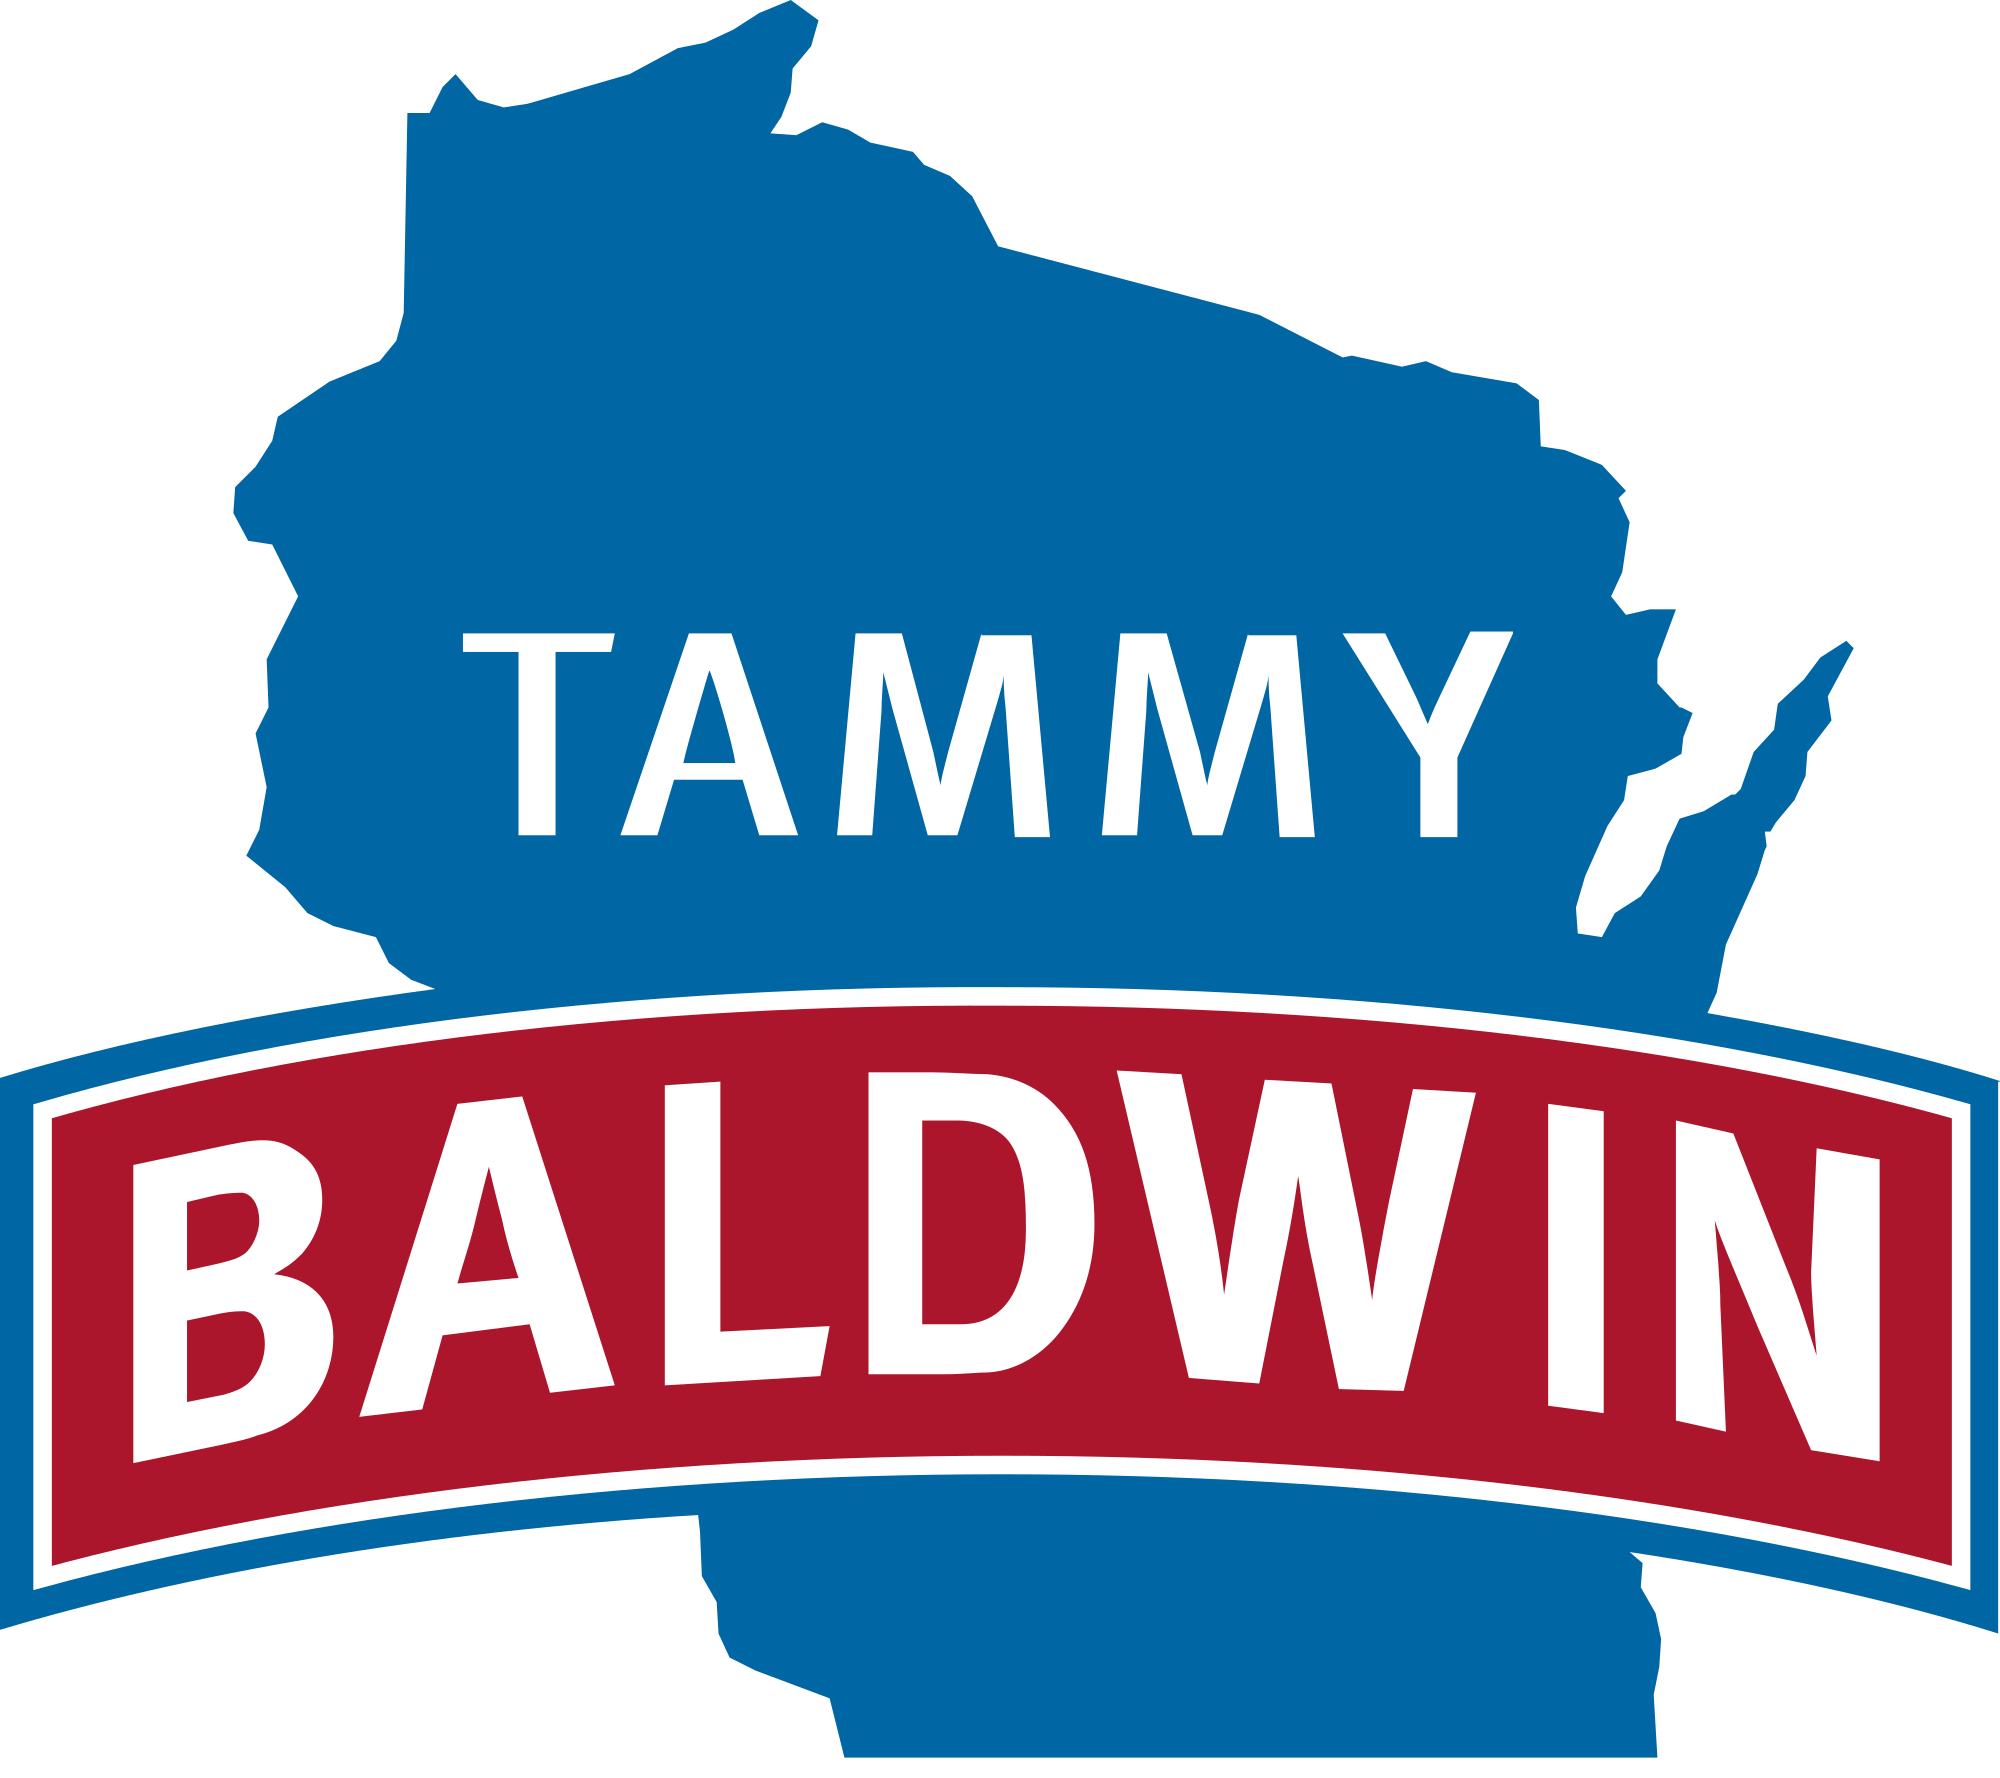 Baldwin Logo - File:Tammy Baldwin 2018 Main logo.svg - Wikimedia Commons